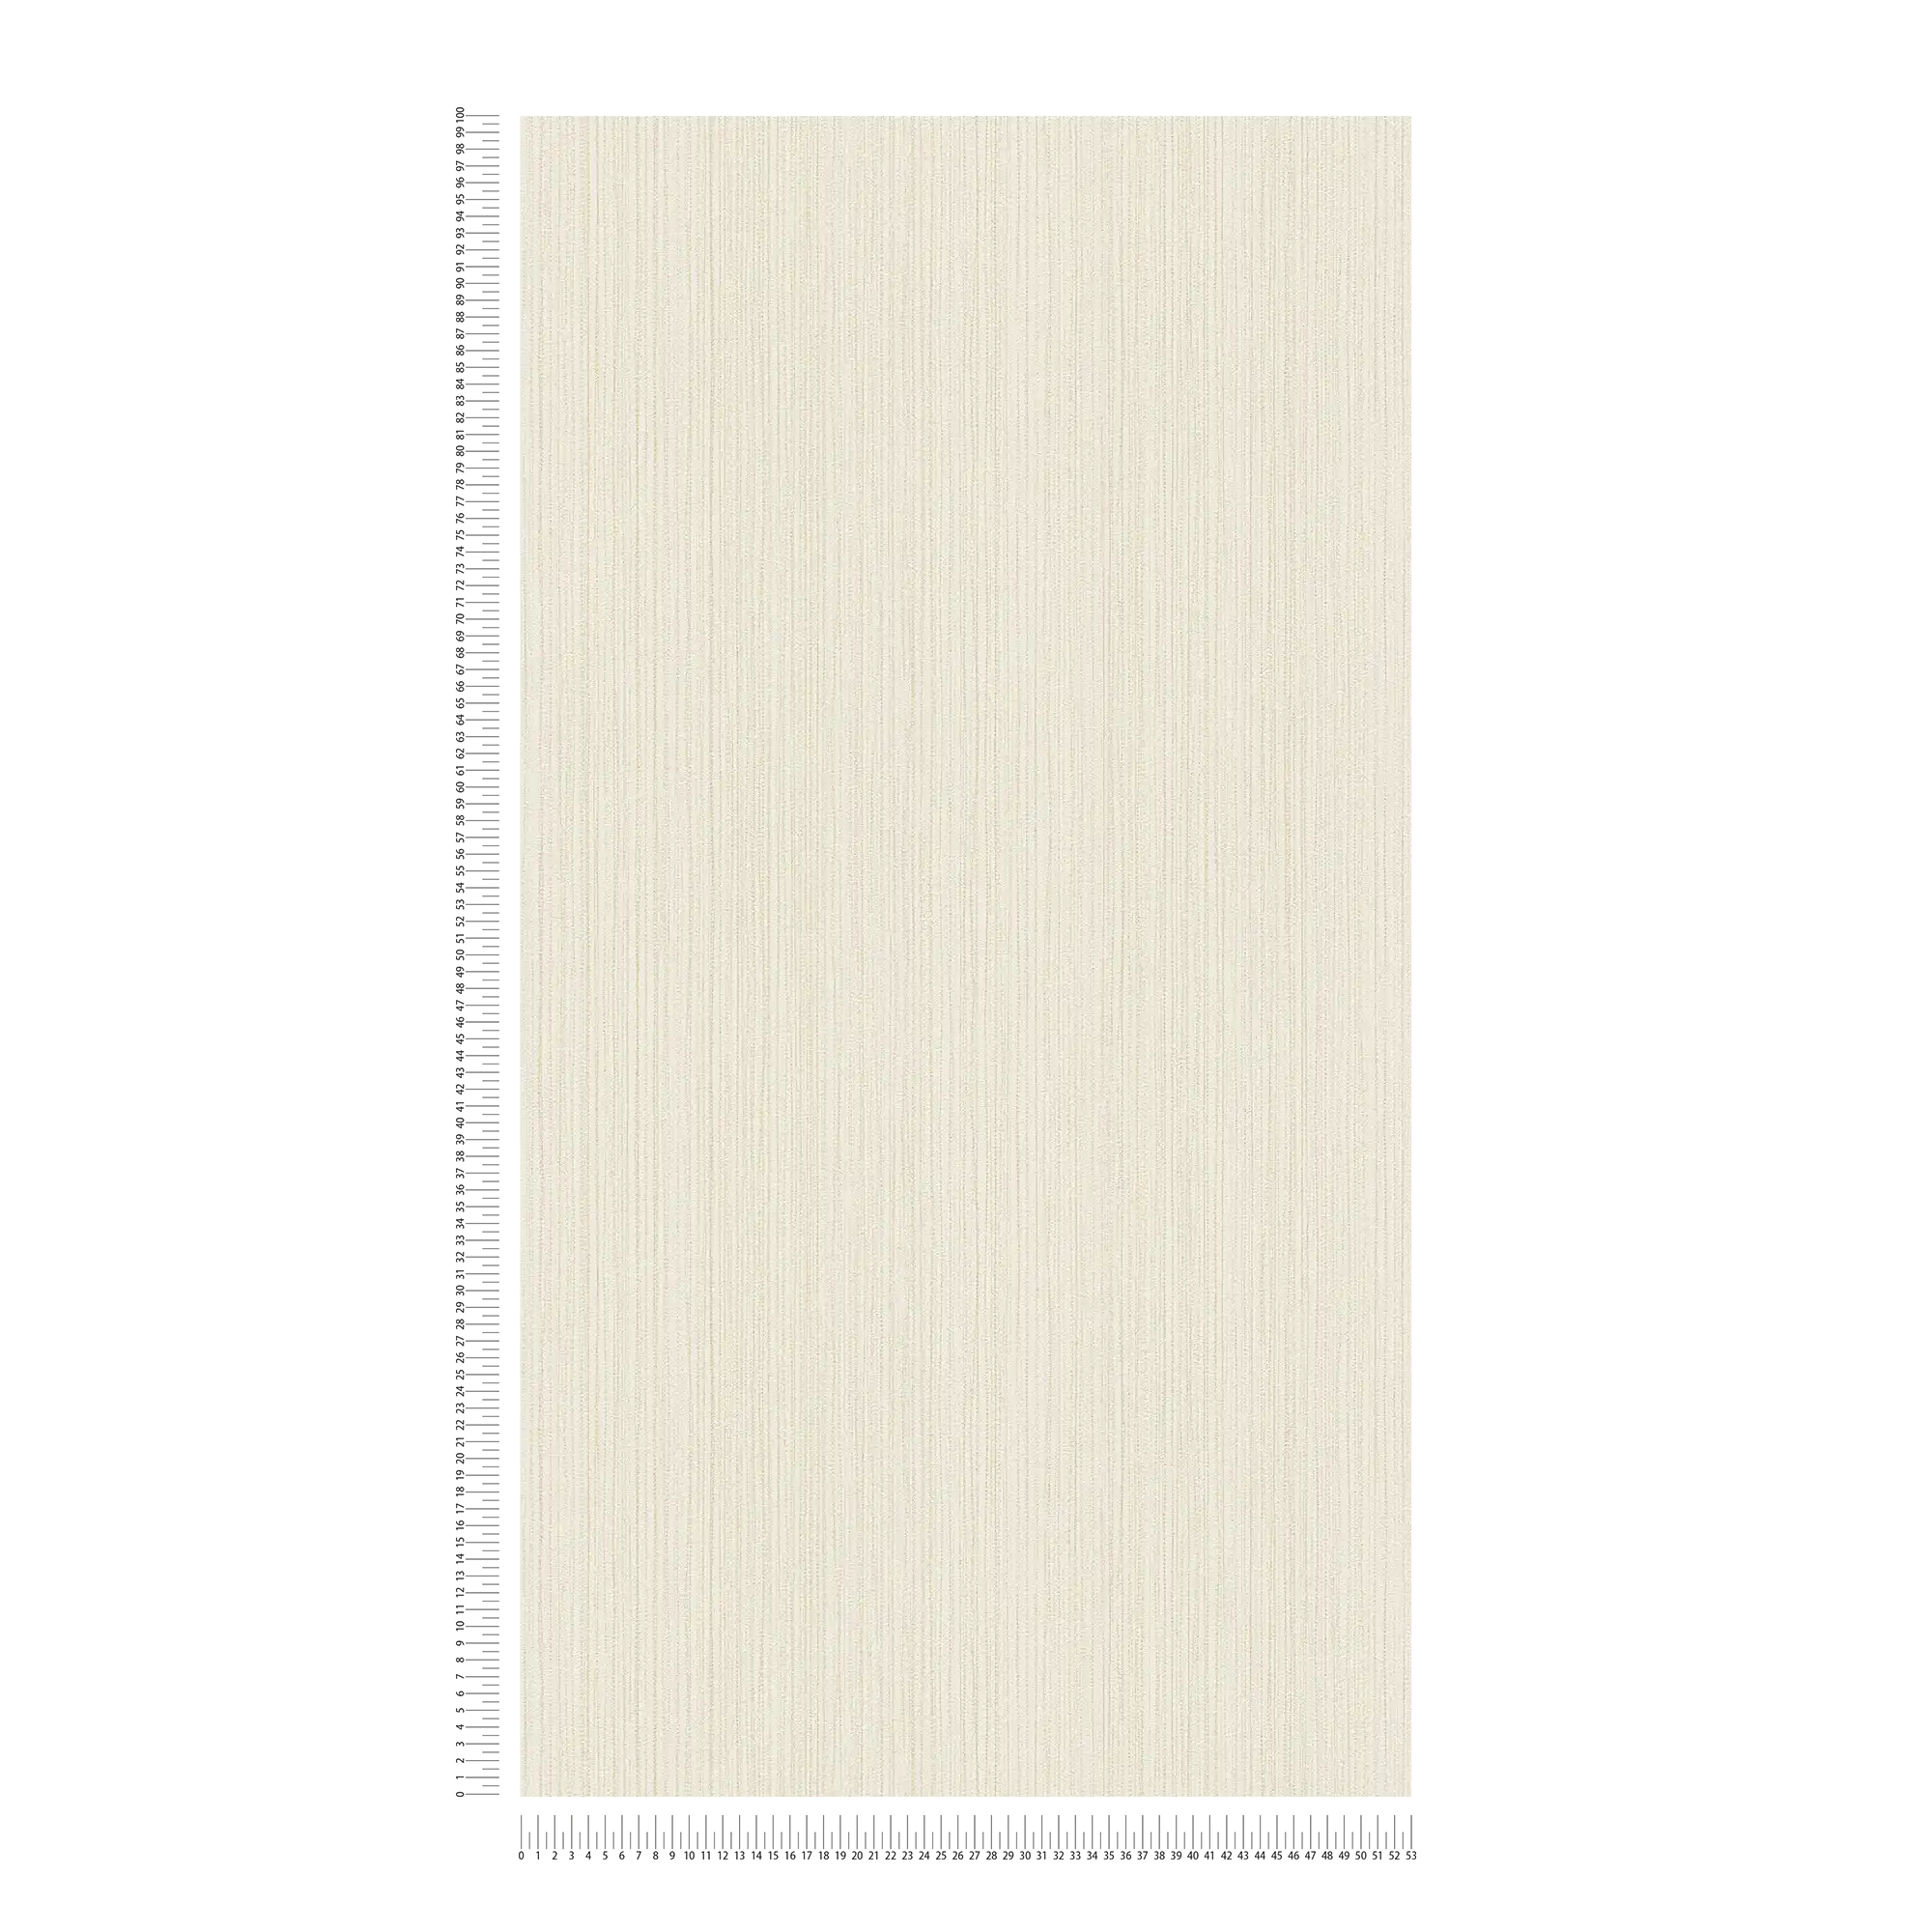             Papel pintado liso marfil con estructura de líneas - crema
        